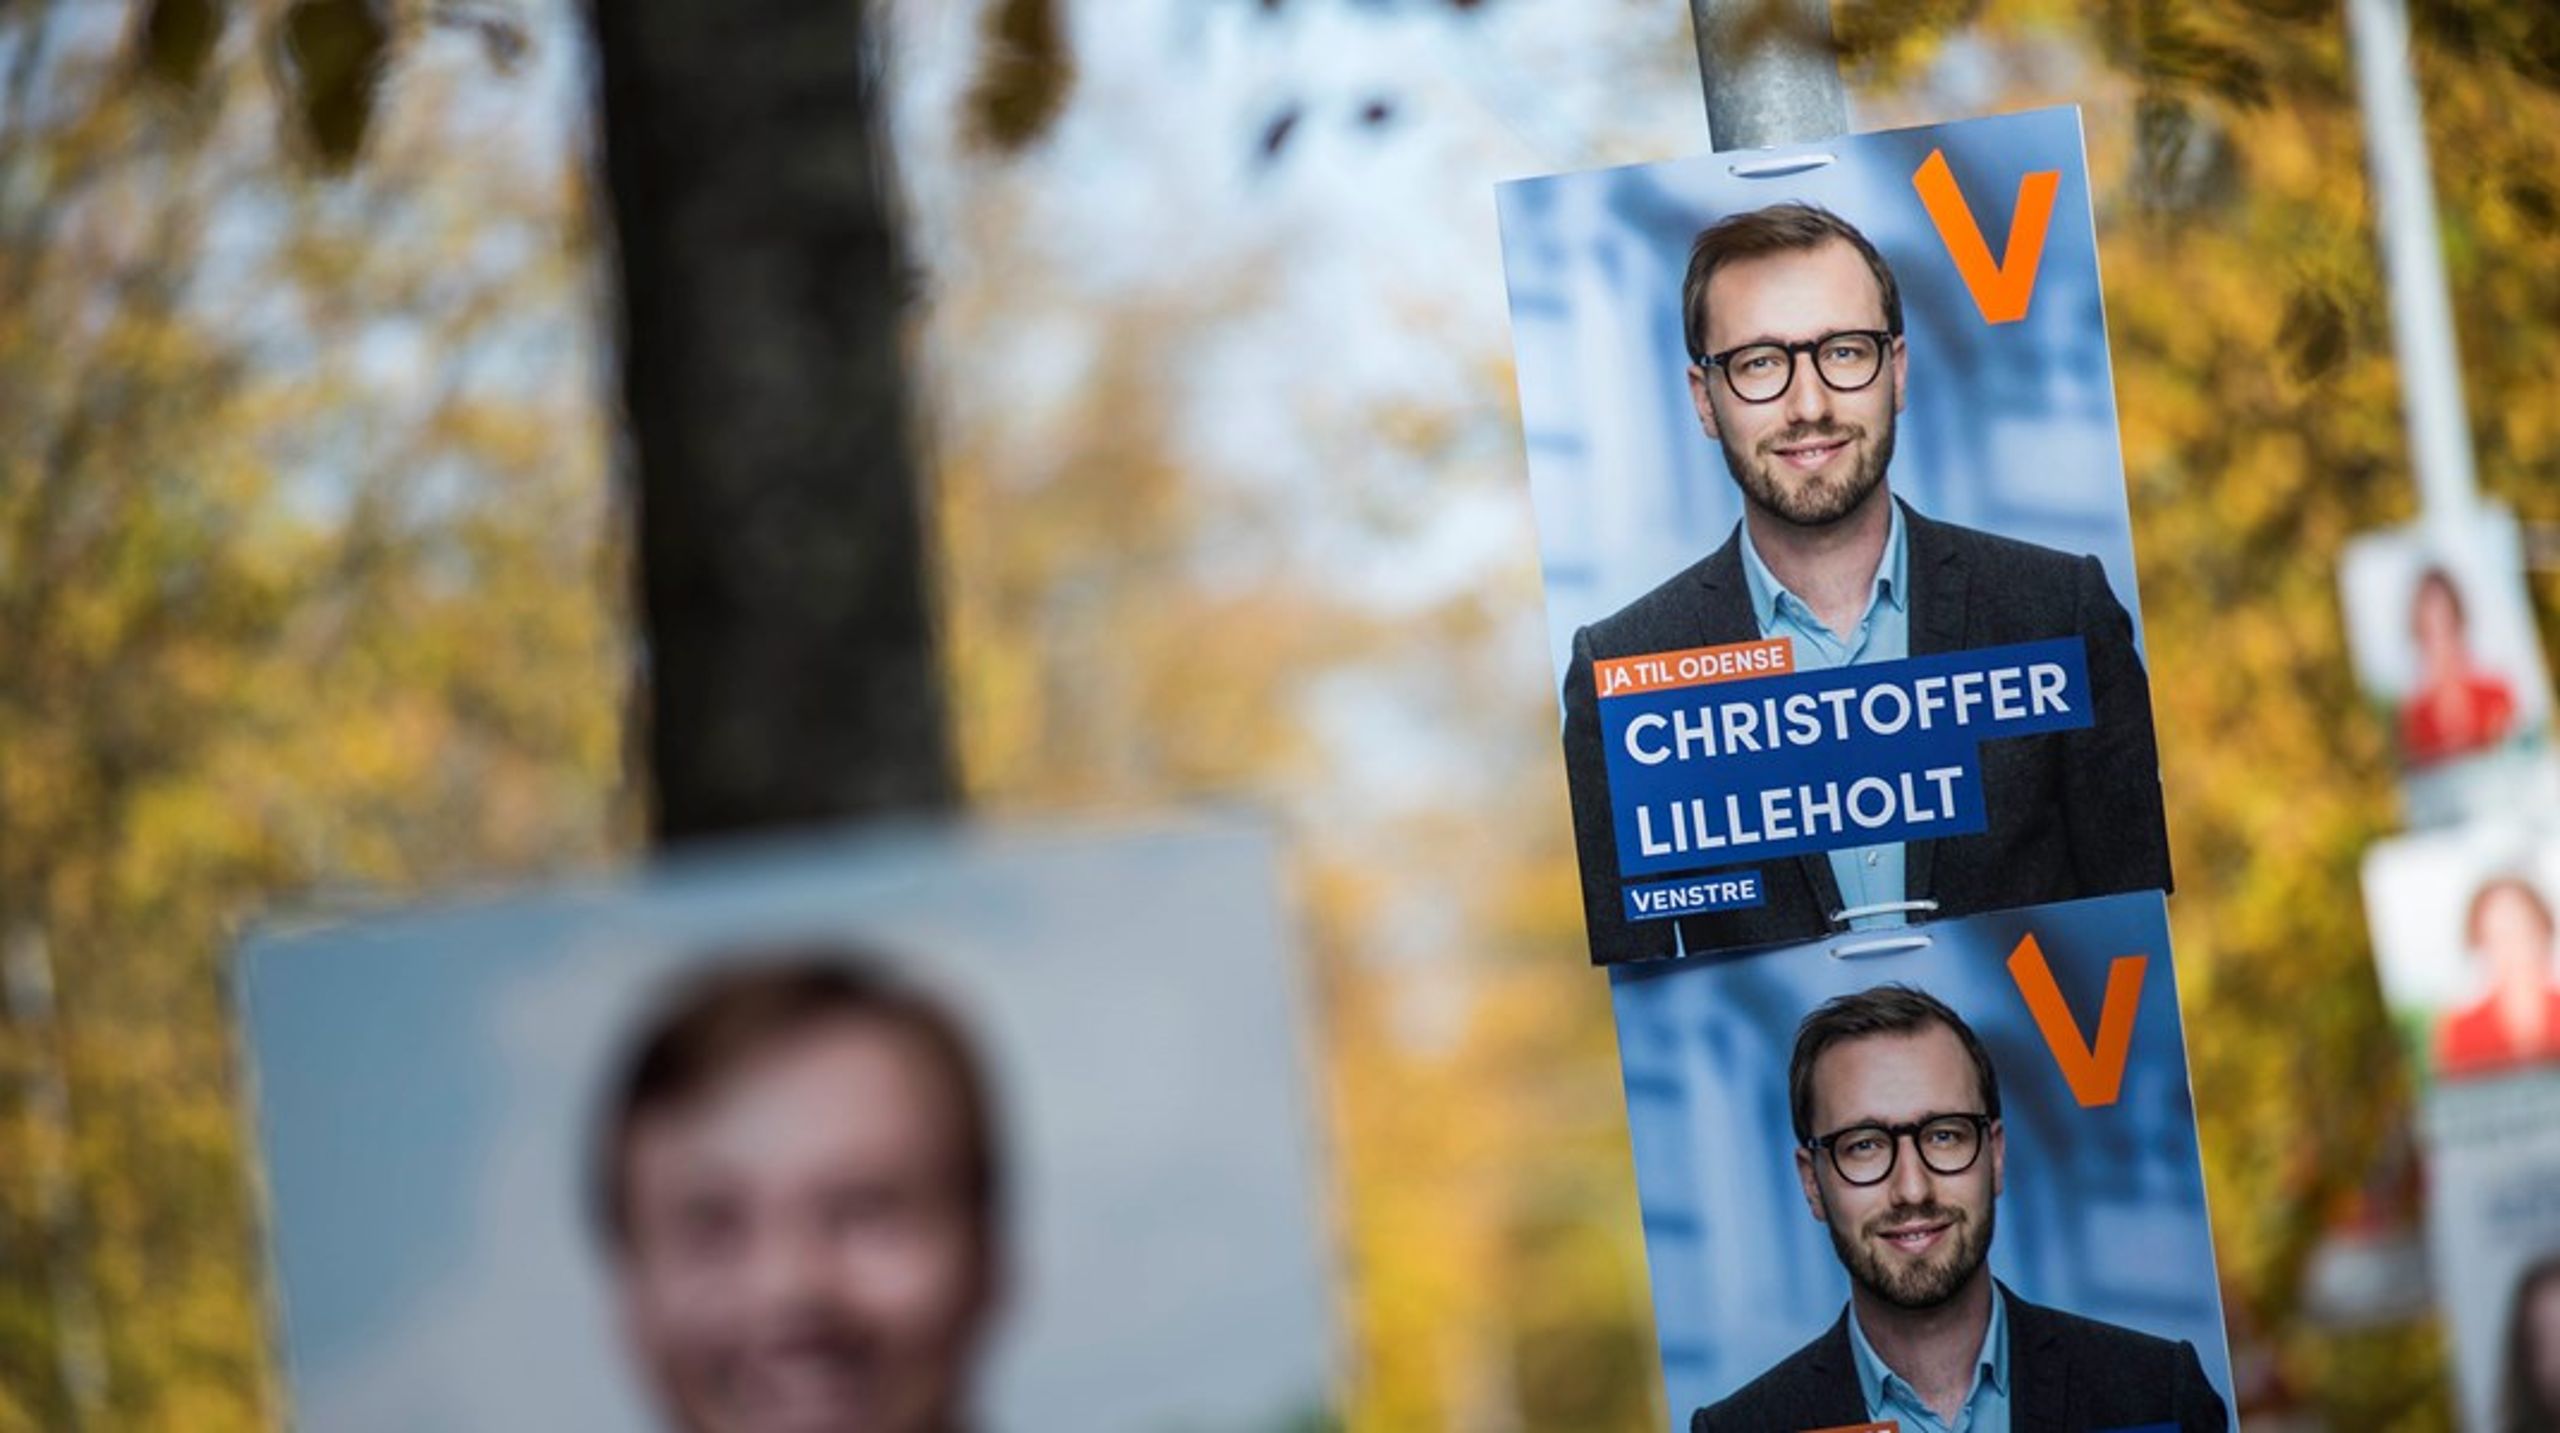 Venstres unge borgmesterhåb i Odense, Christoffer Lilleholt, har i oktober nydt glæde af mere medieomtale end den socialdemokratiske borgmester.